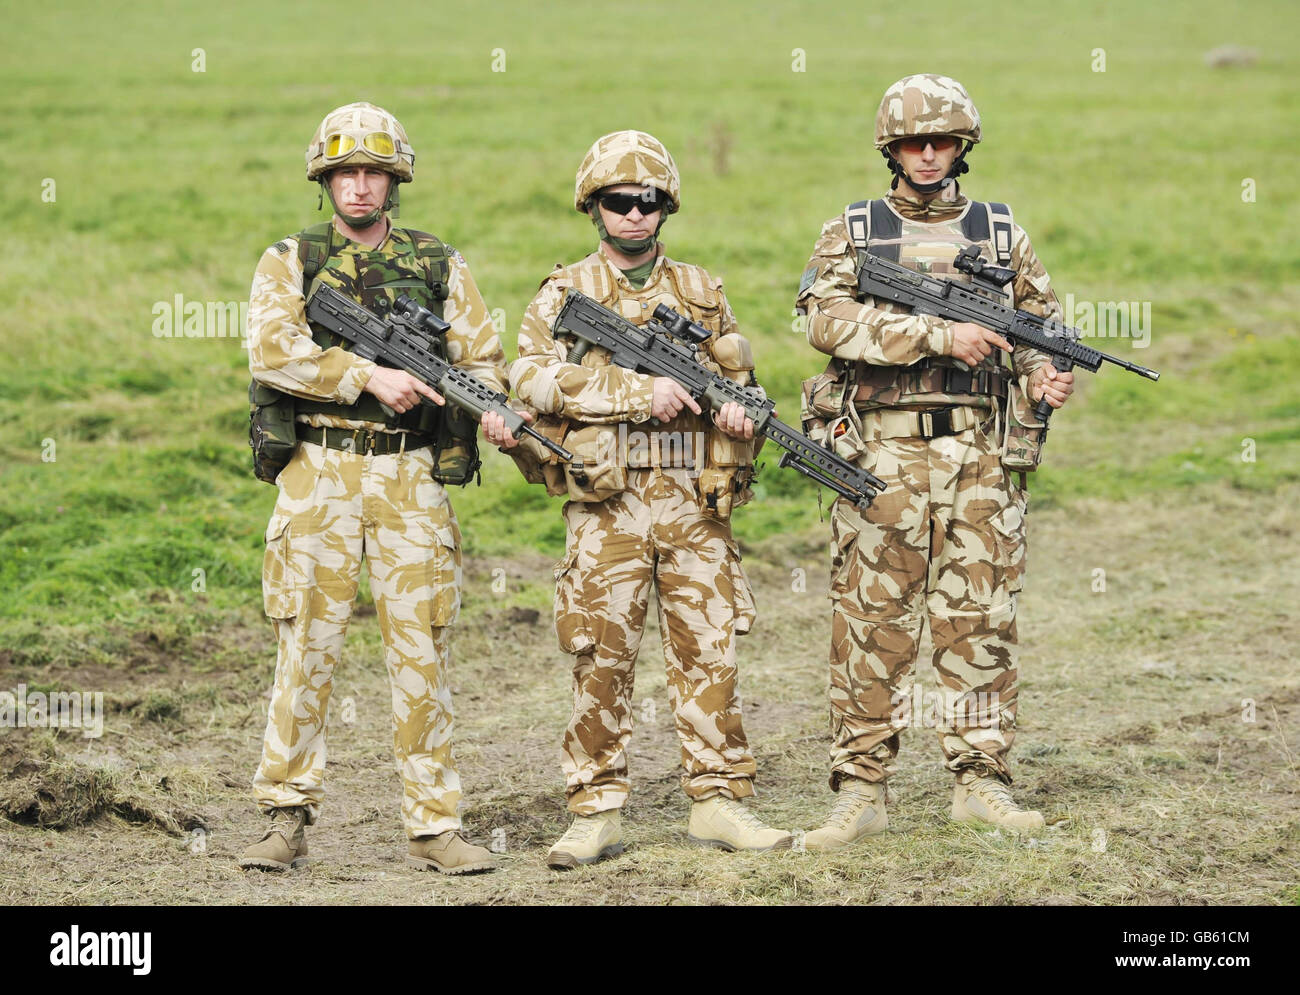 Ein Vergleich der Waffen der britischen Armee. Auf der linken Seite sind die SA80-Waffe und der SA80-Bausatz, die vor 2003 ausgestellt wurden. In der Mitte befindet sich ein Soldat mit einem derzeit ausgestellten SA80 A2 LSW (beachten Sie, dass der SA80 noch ausgestellt ist und der LSW die Feuerkraft innerhalb eines Feuerwehrteams ergänzt. Es handelt sich nicht um ein neues Modell oder einen Austausch des SA80). Auf der rechten Seite ist ein Lötkit in der Testphase mit einer brandneuen Testvariante des SA80 zu sehen. Stockfoto